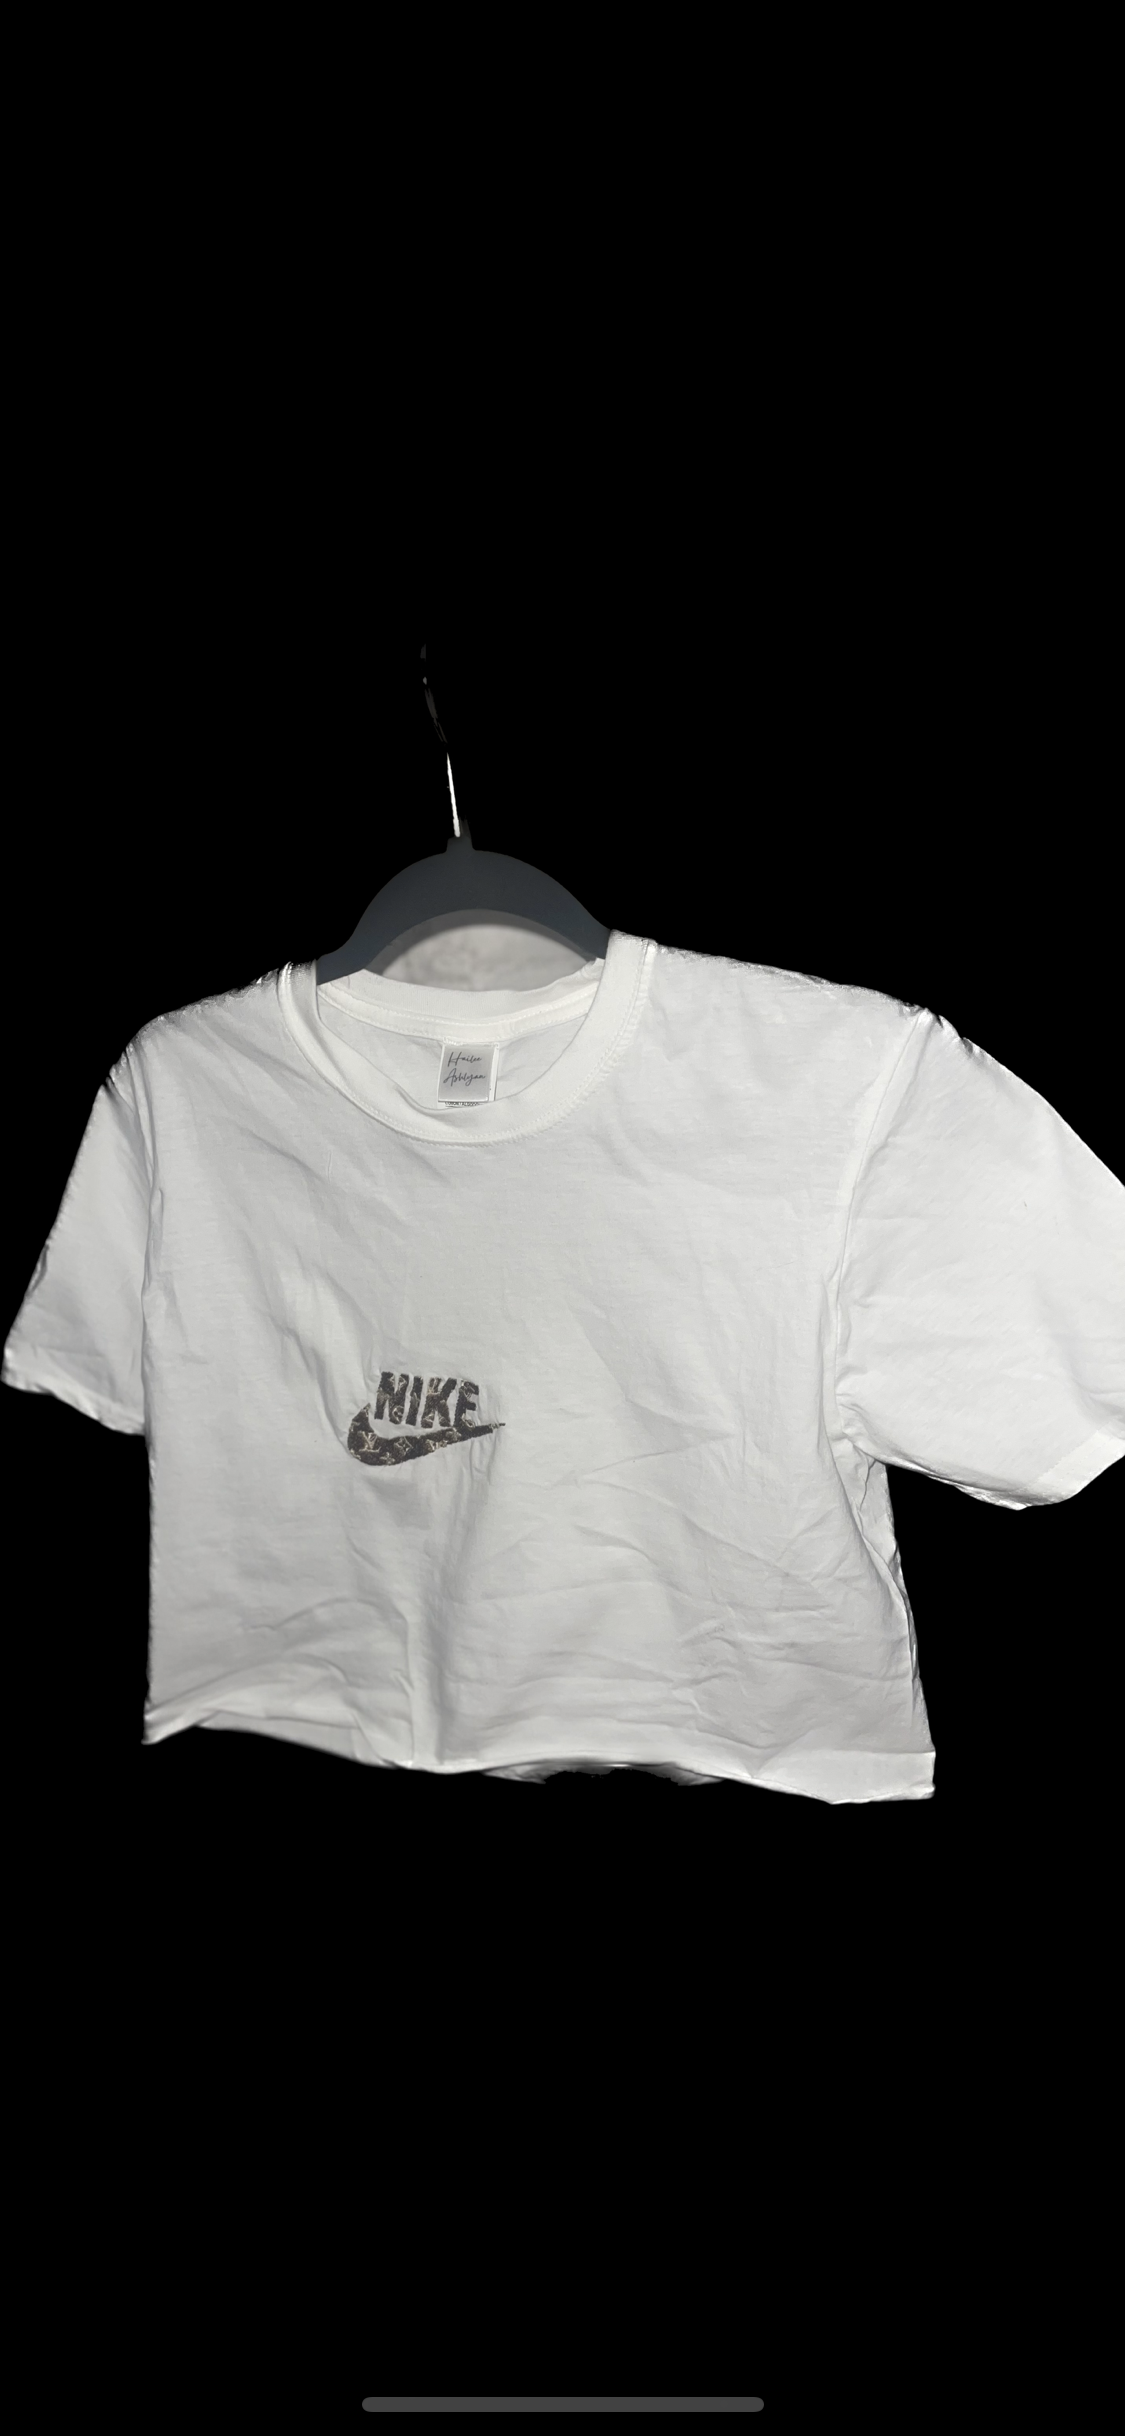 LV Nike inspired shirt